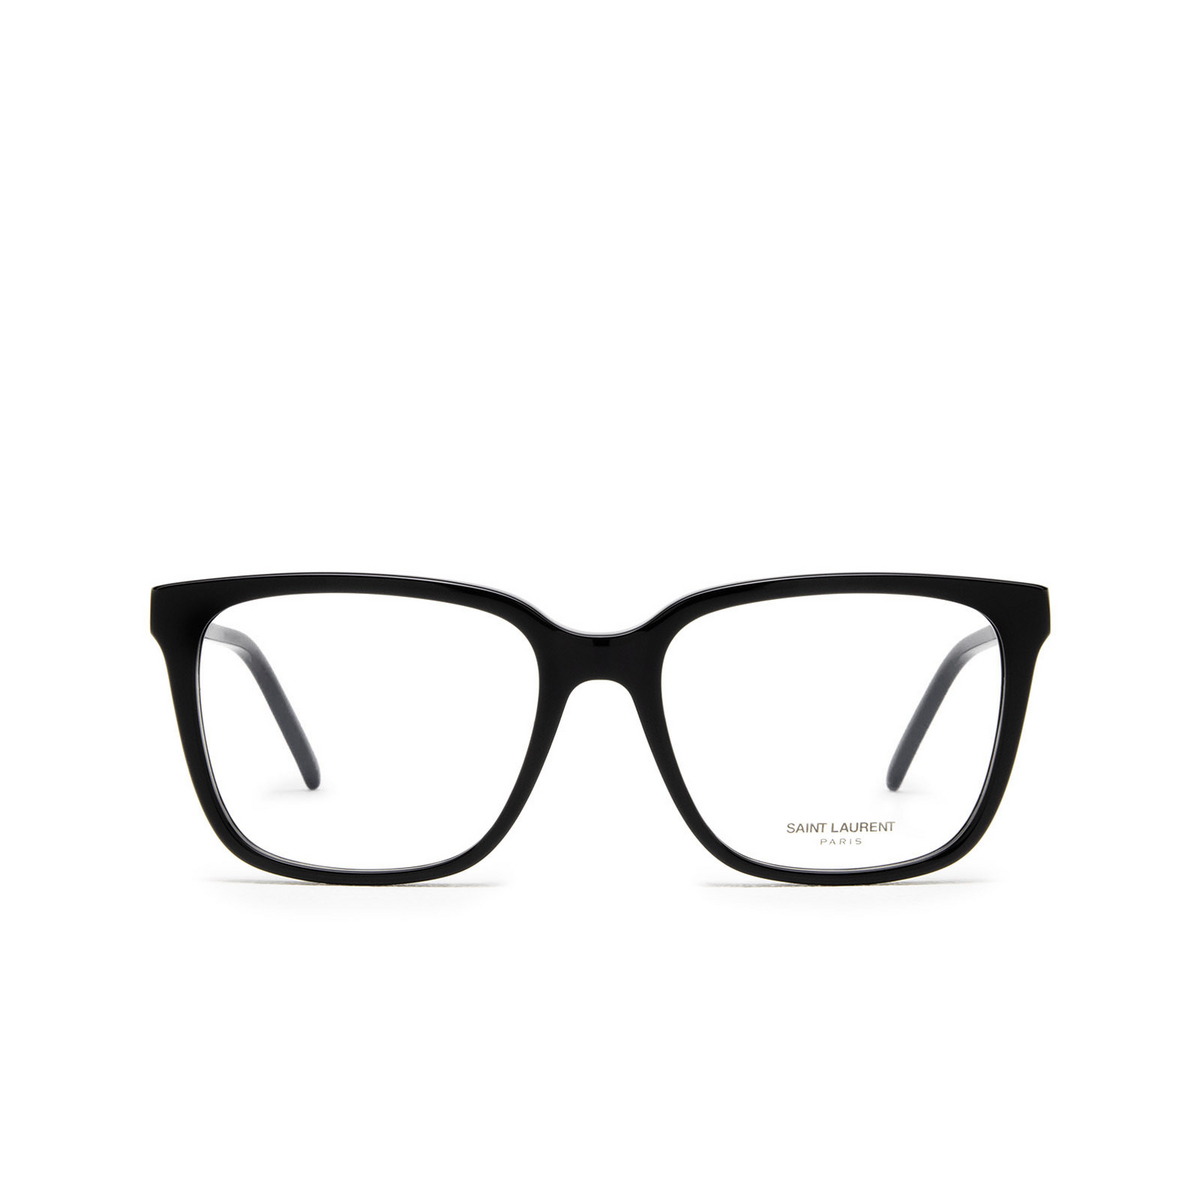 Saint Laurent® Square Eyeglasses: SL M102 OPT color Black 001 - front view.